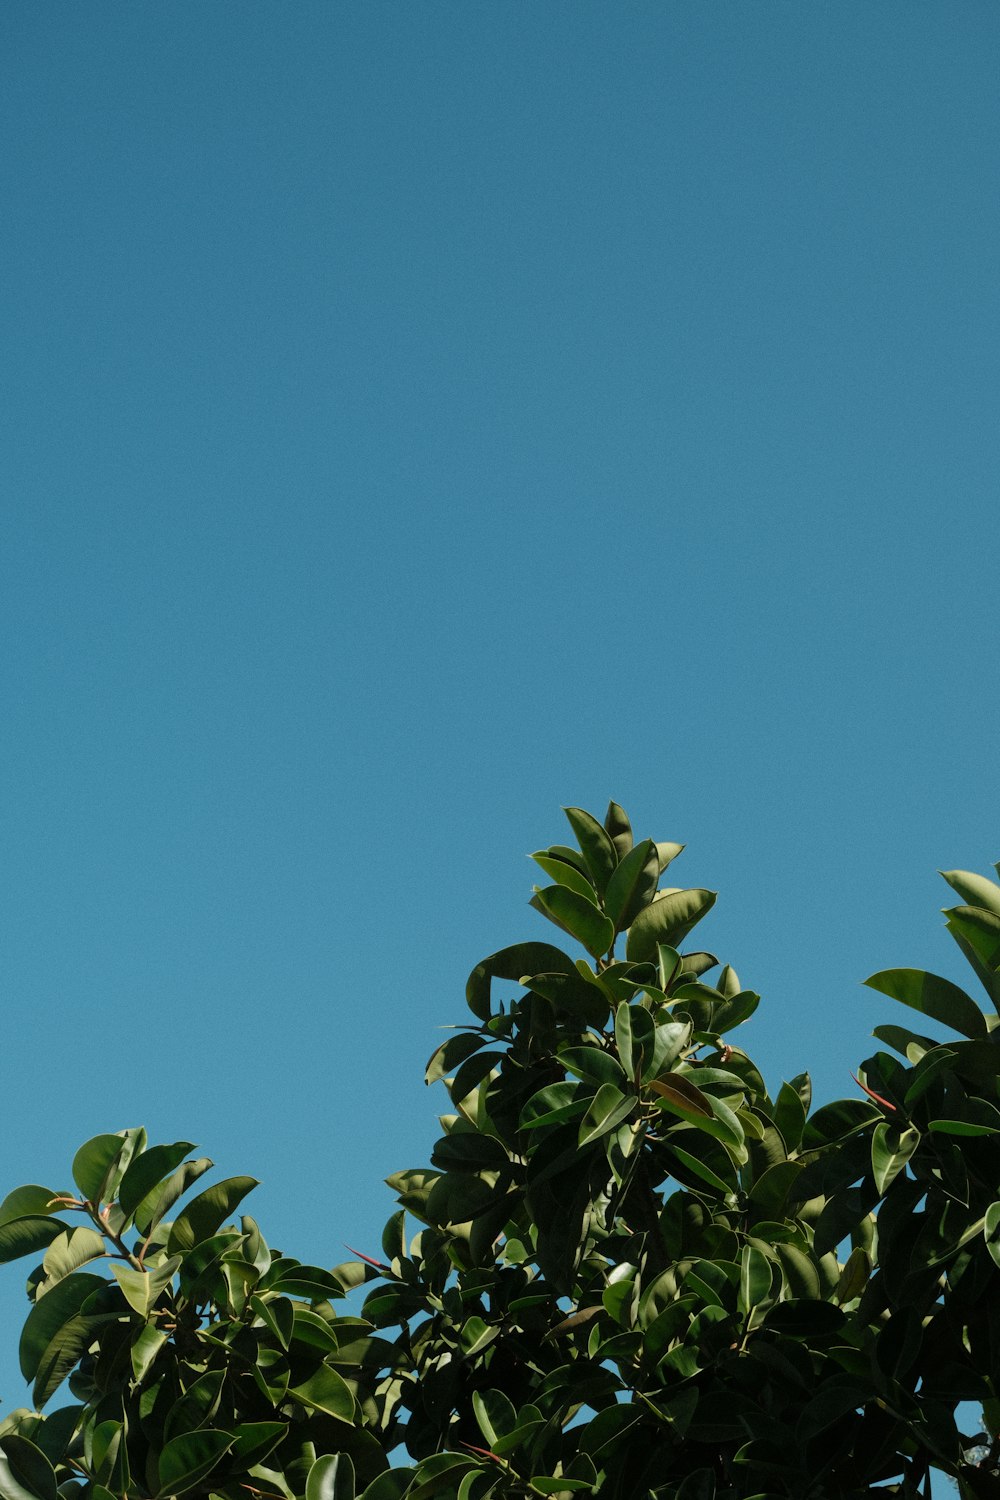 Un avion survolant un arbre avec un ciel bleu en arrière-plan